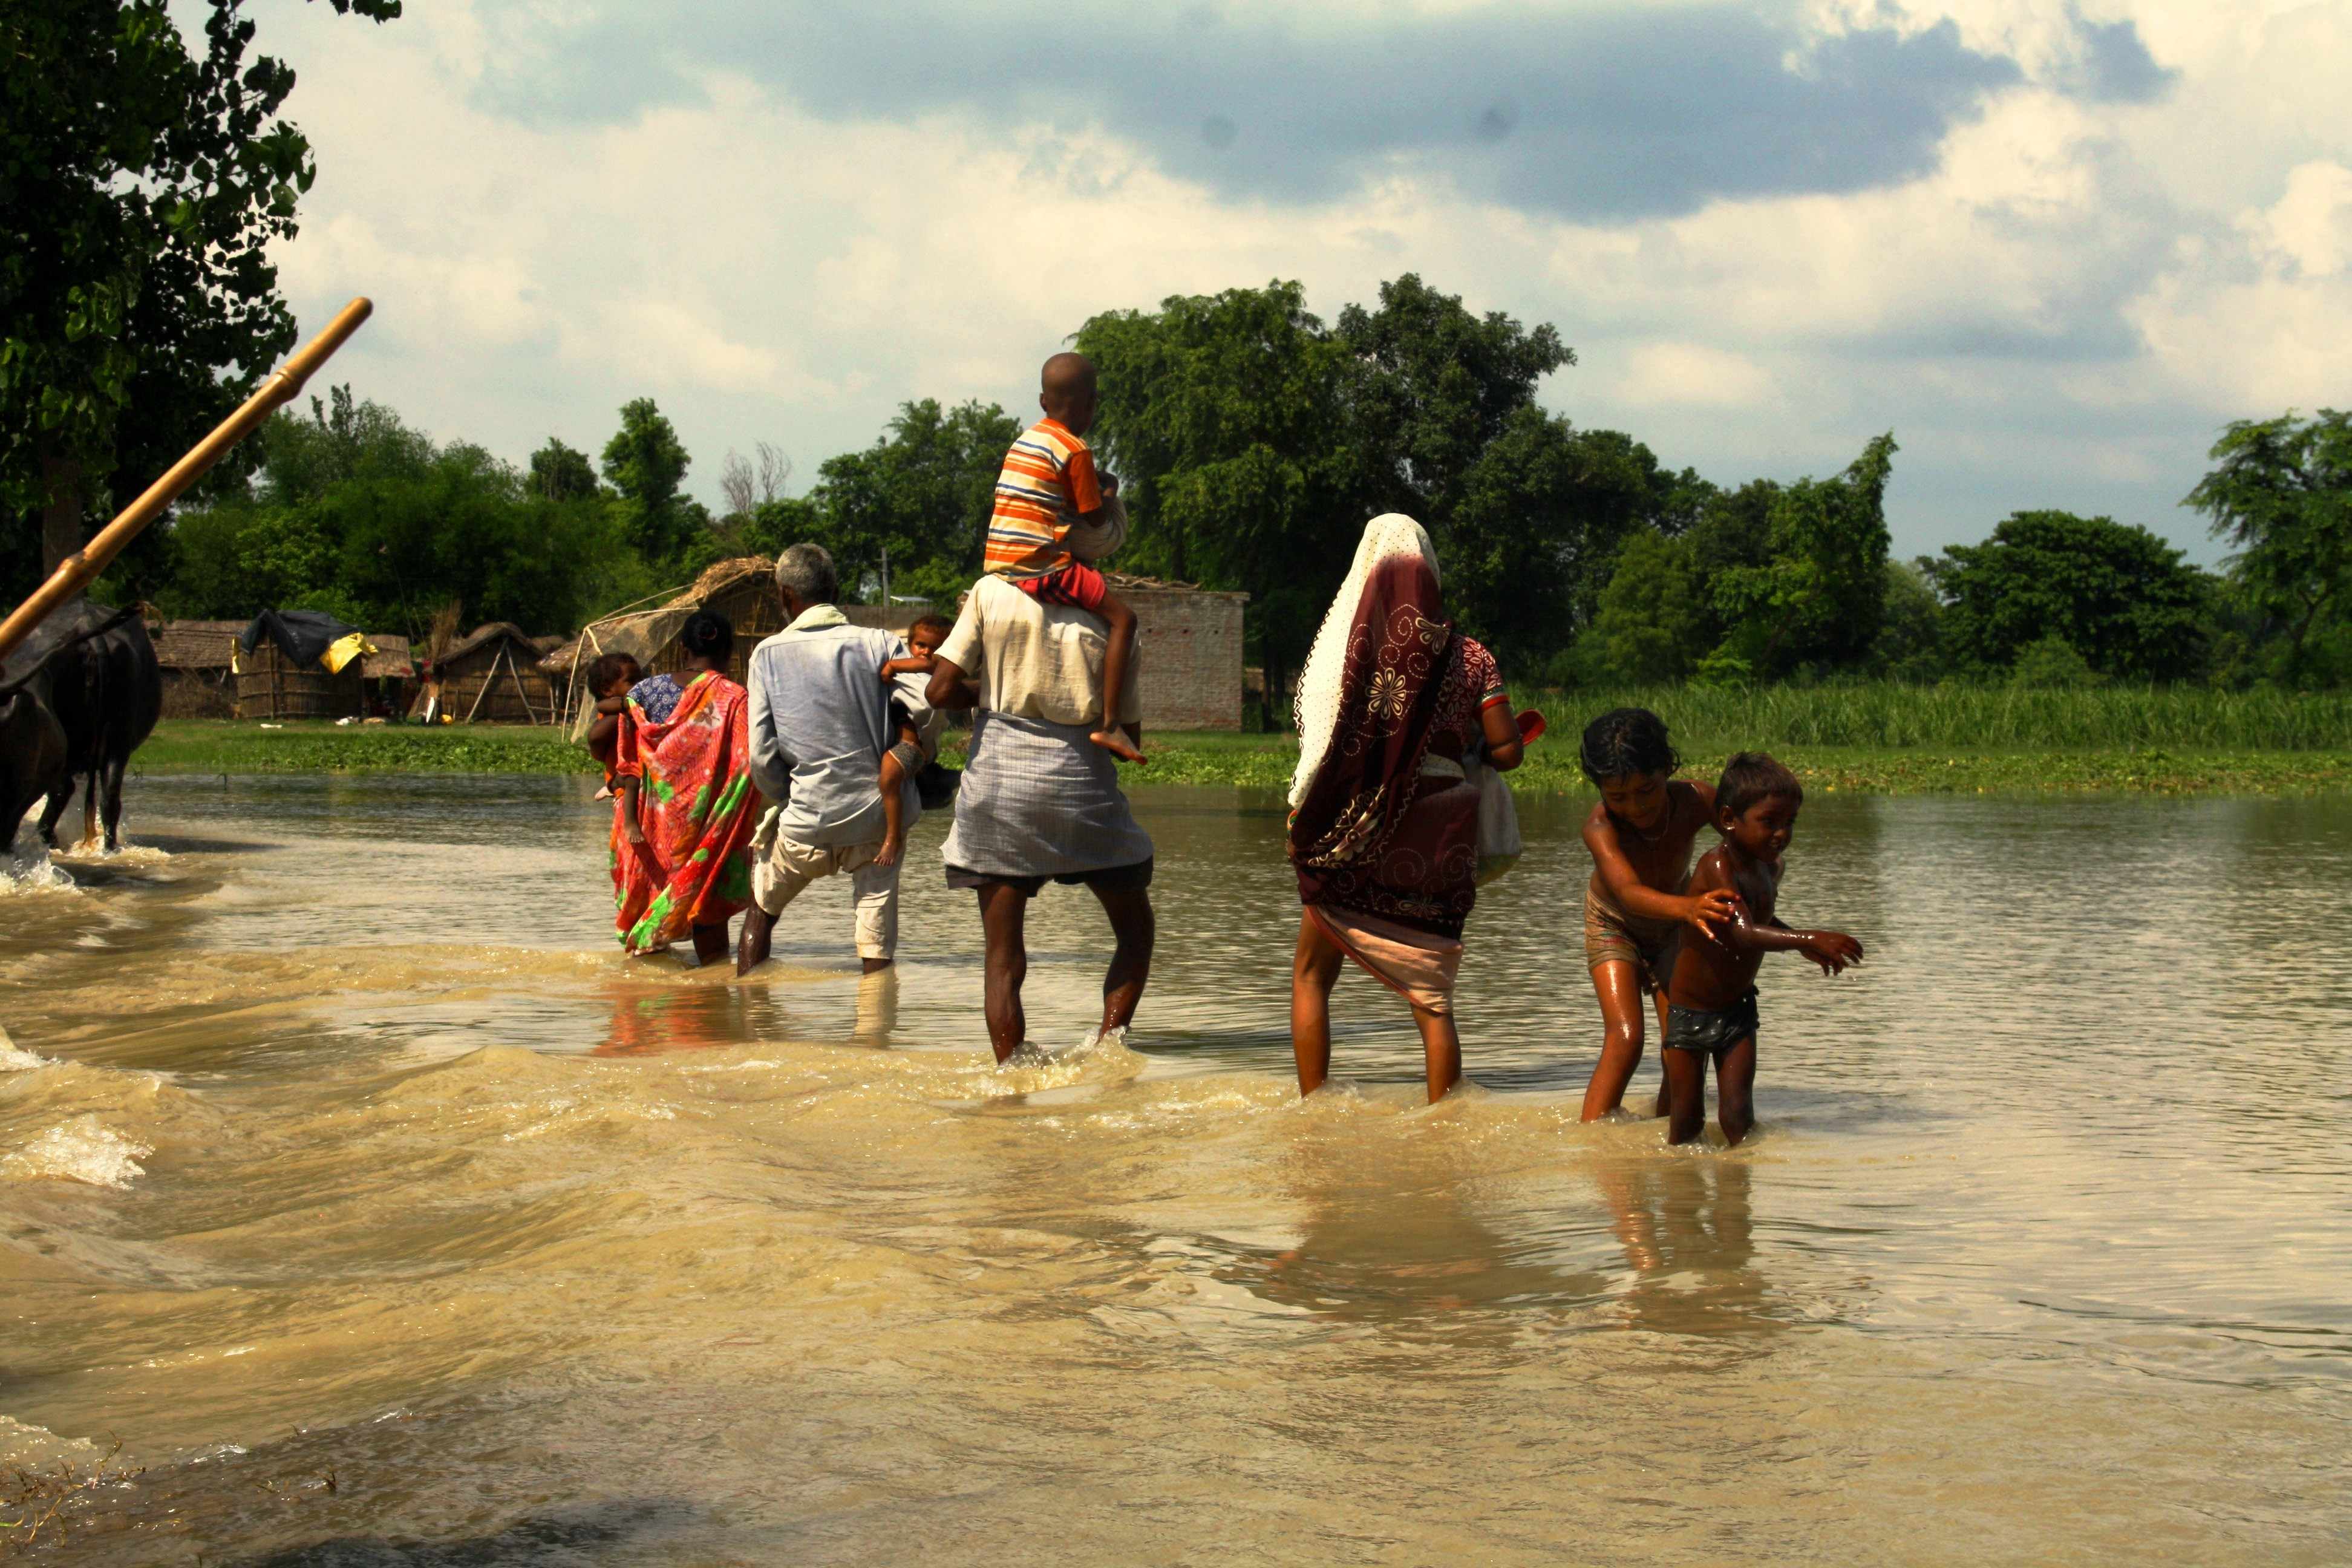 यूपी : बाढ़ को लेकर खतरे में 38 जिले और 30 बांध , नेपाल के 2 बांध बढ़ा सकते हैं समस्या